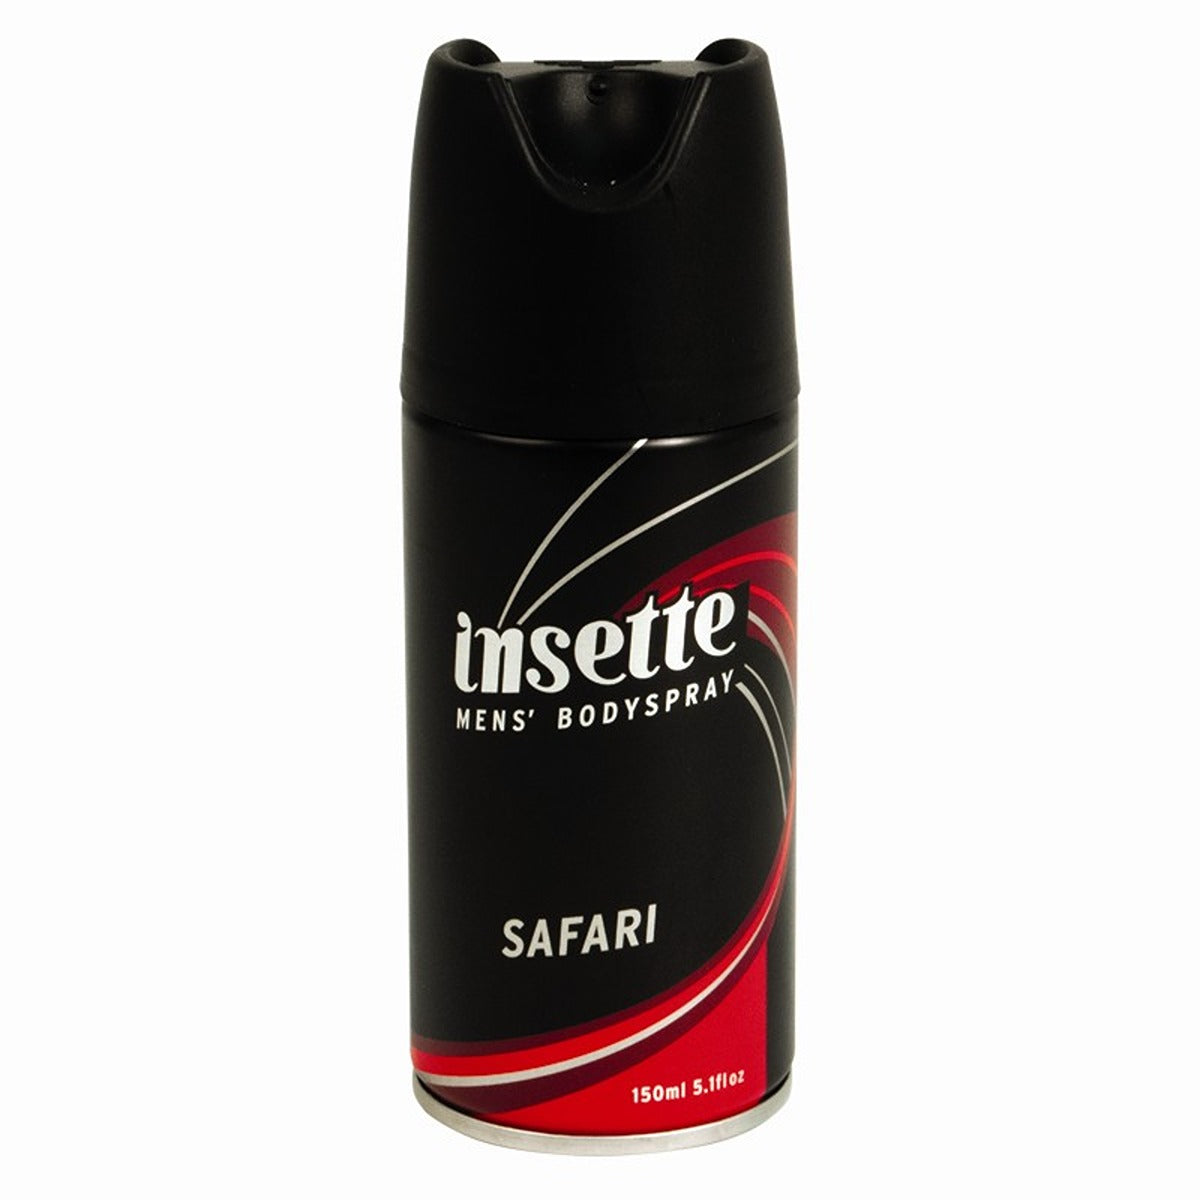 Insette - Men's Deodorant Body Spray Safari - 150ml - Continental Food Store